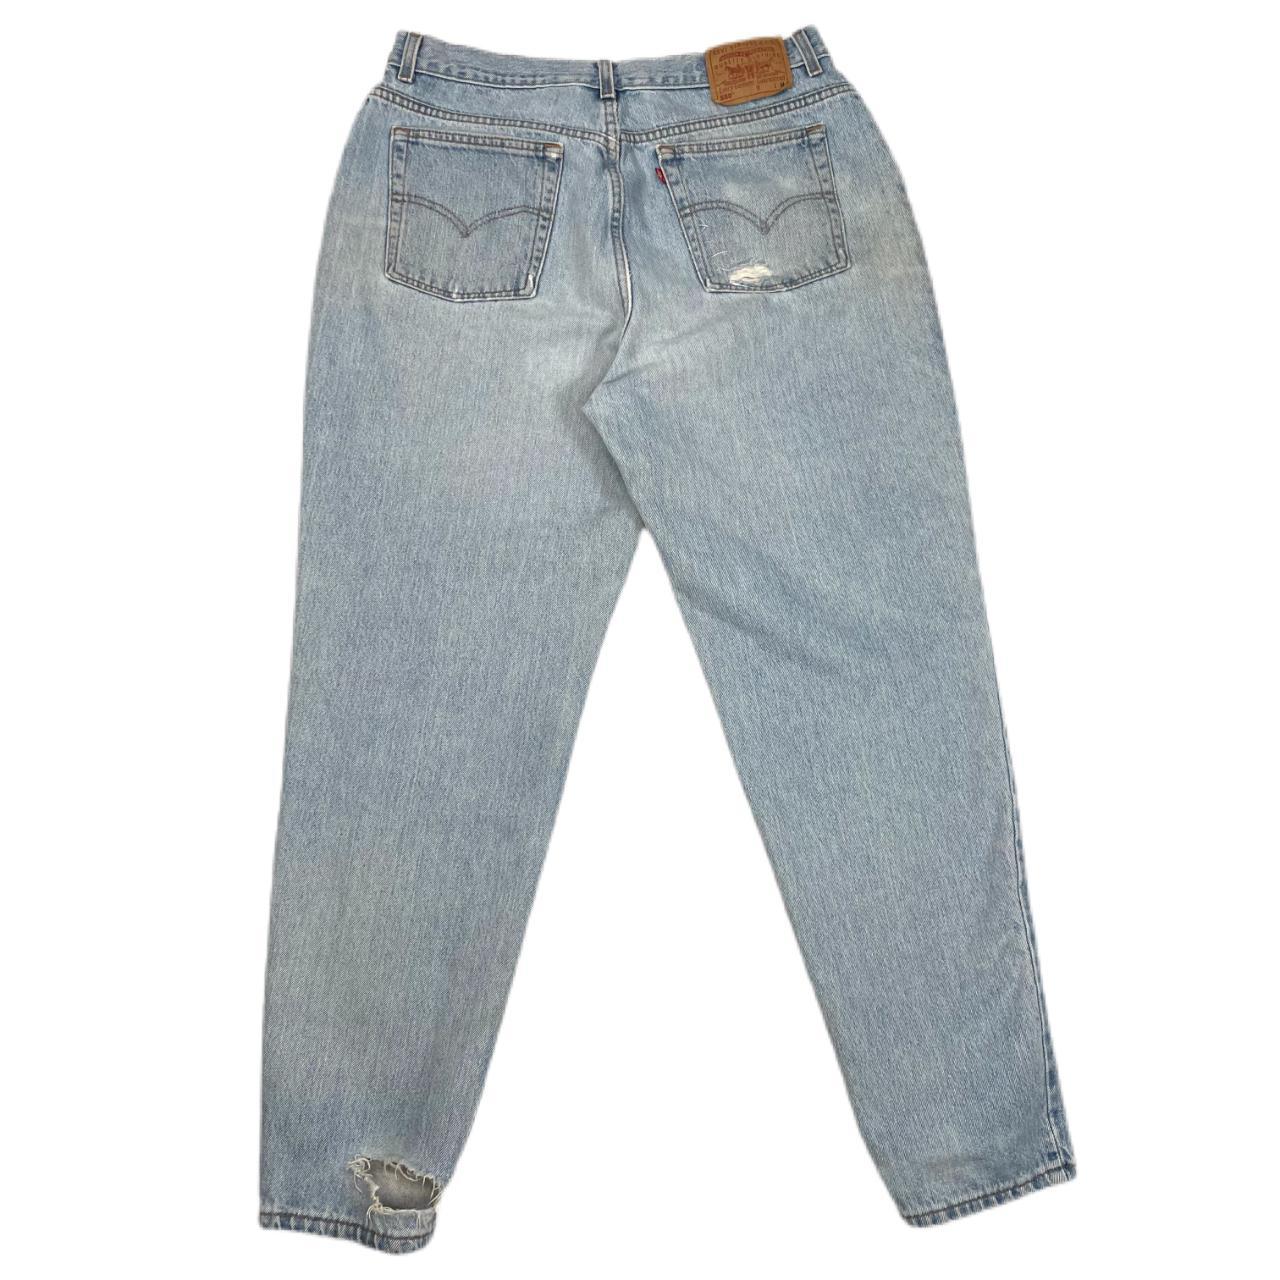 Vintage Levi’s 550 distressed jeans • Women's Size... - Depop